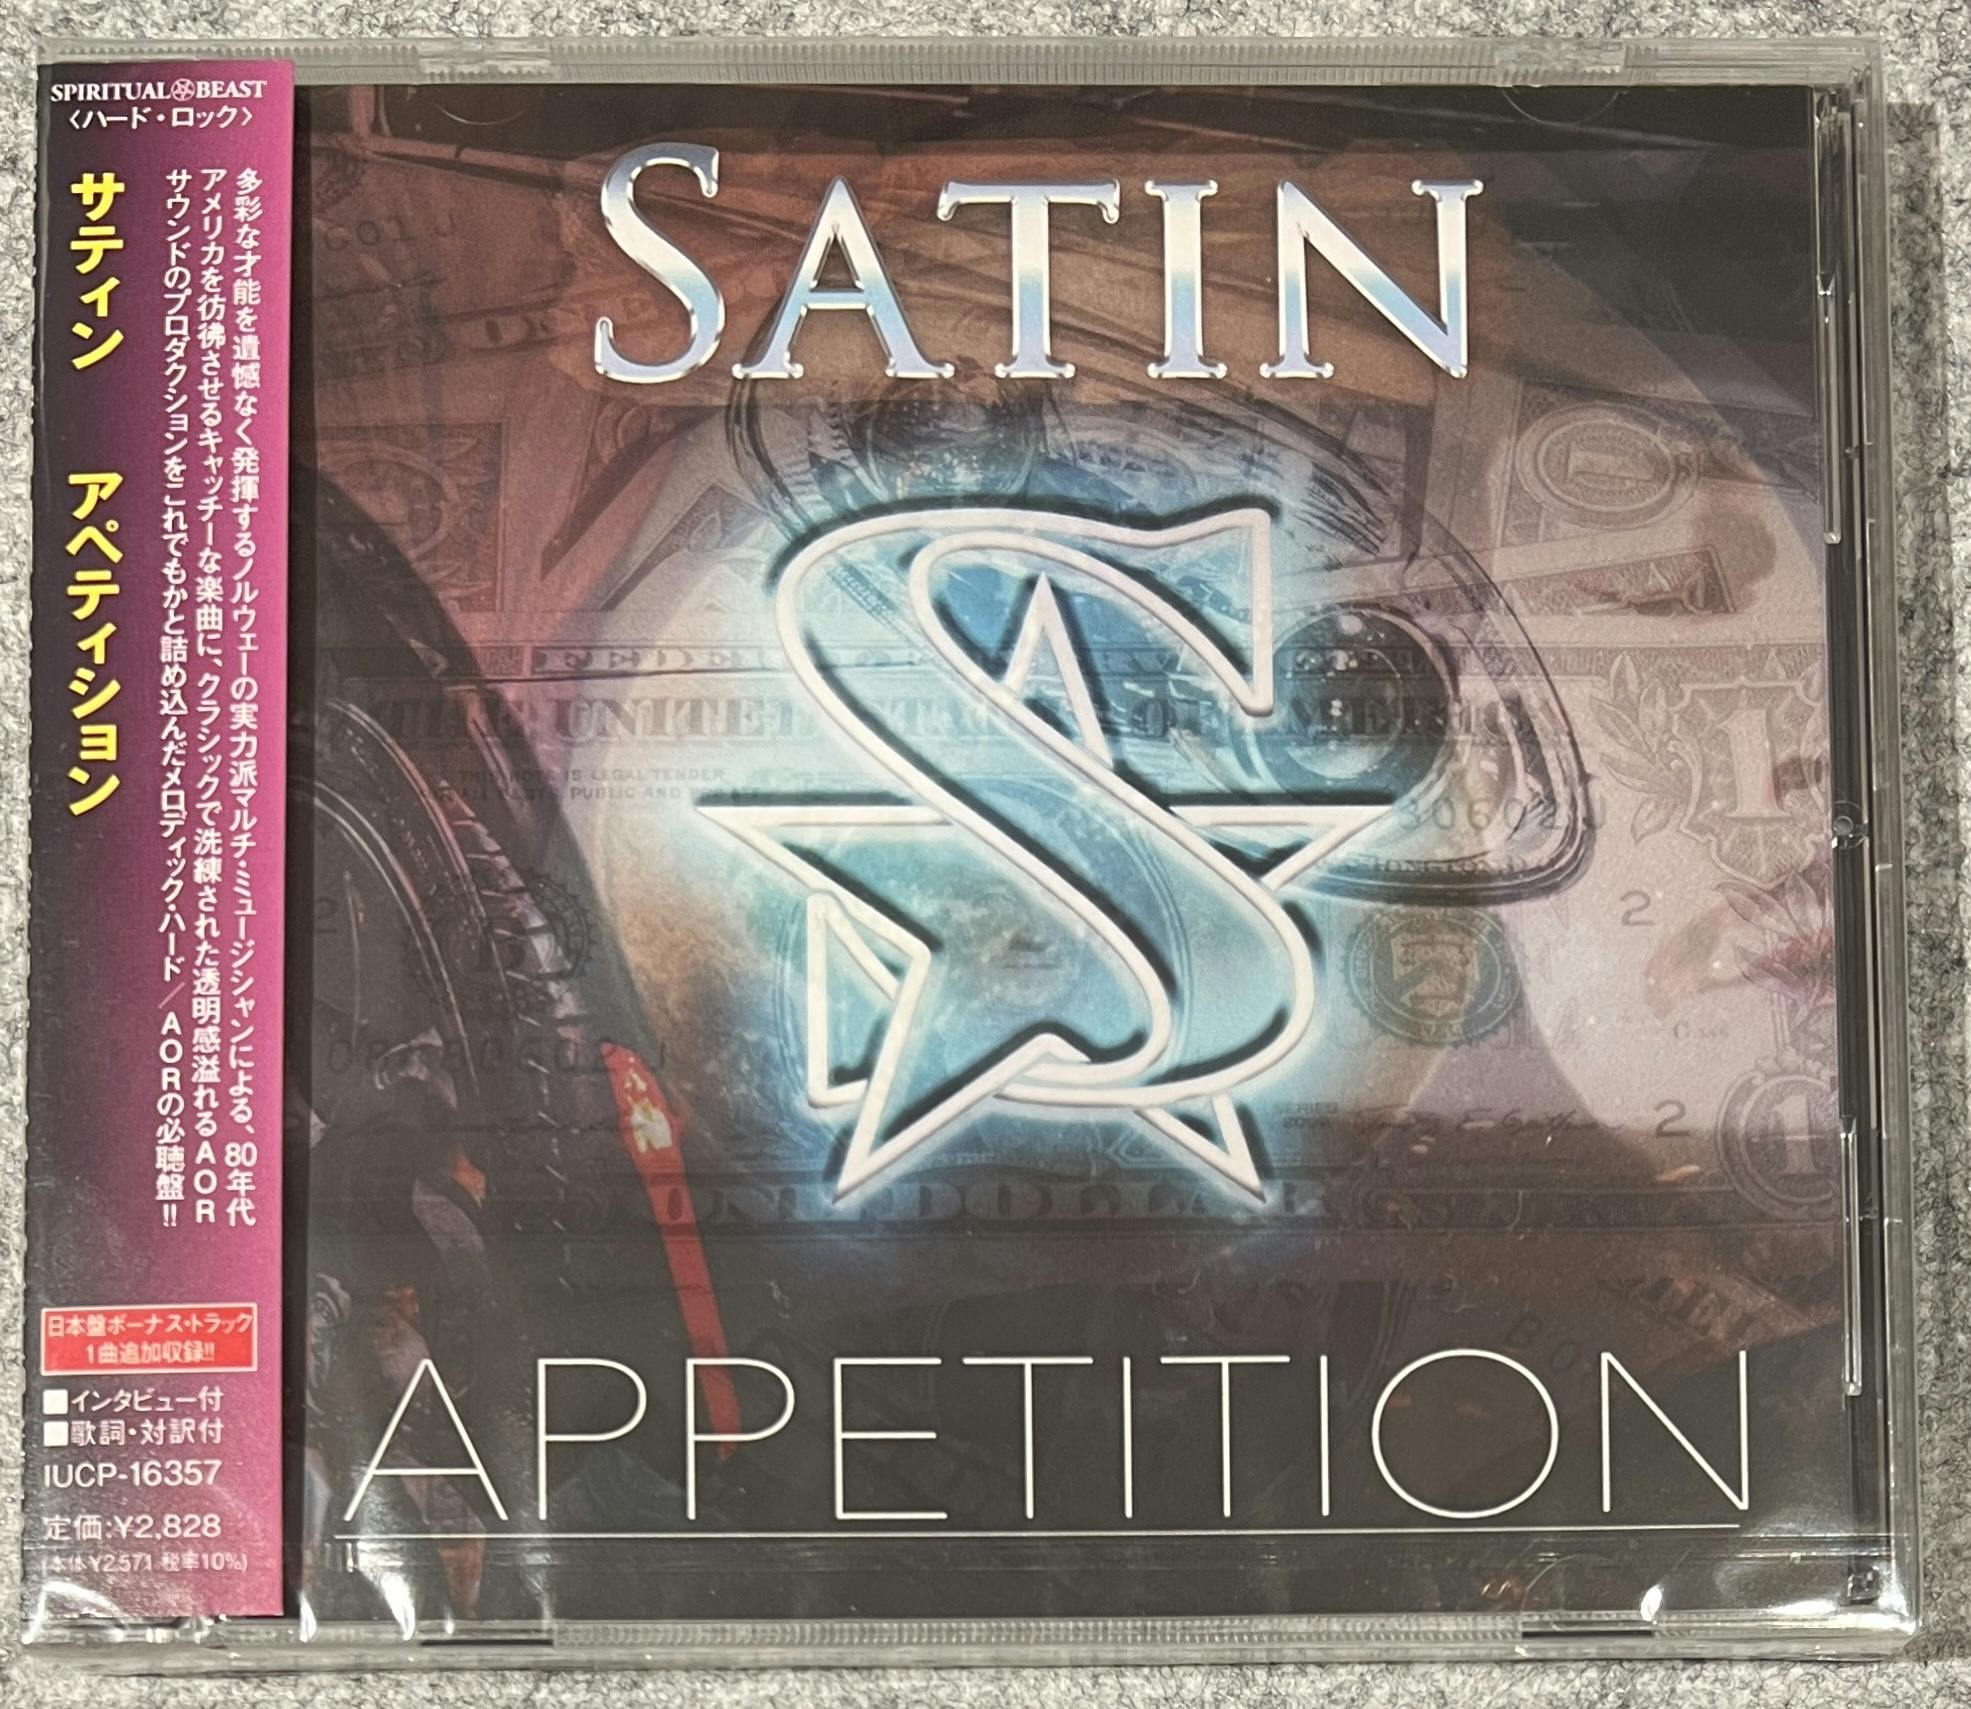 Appetition "Japansk Utgave" med bonus låt CD